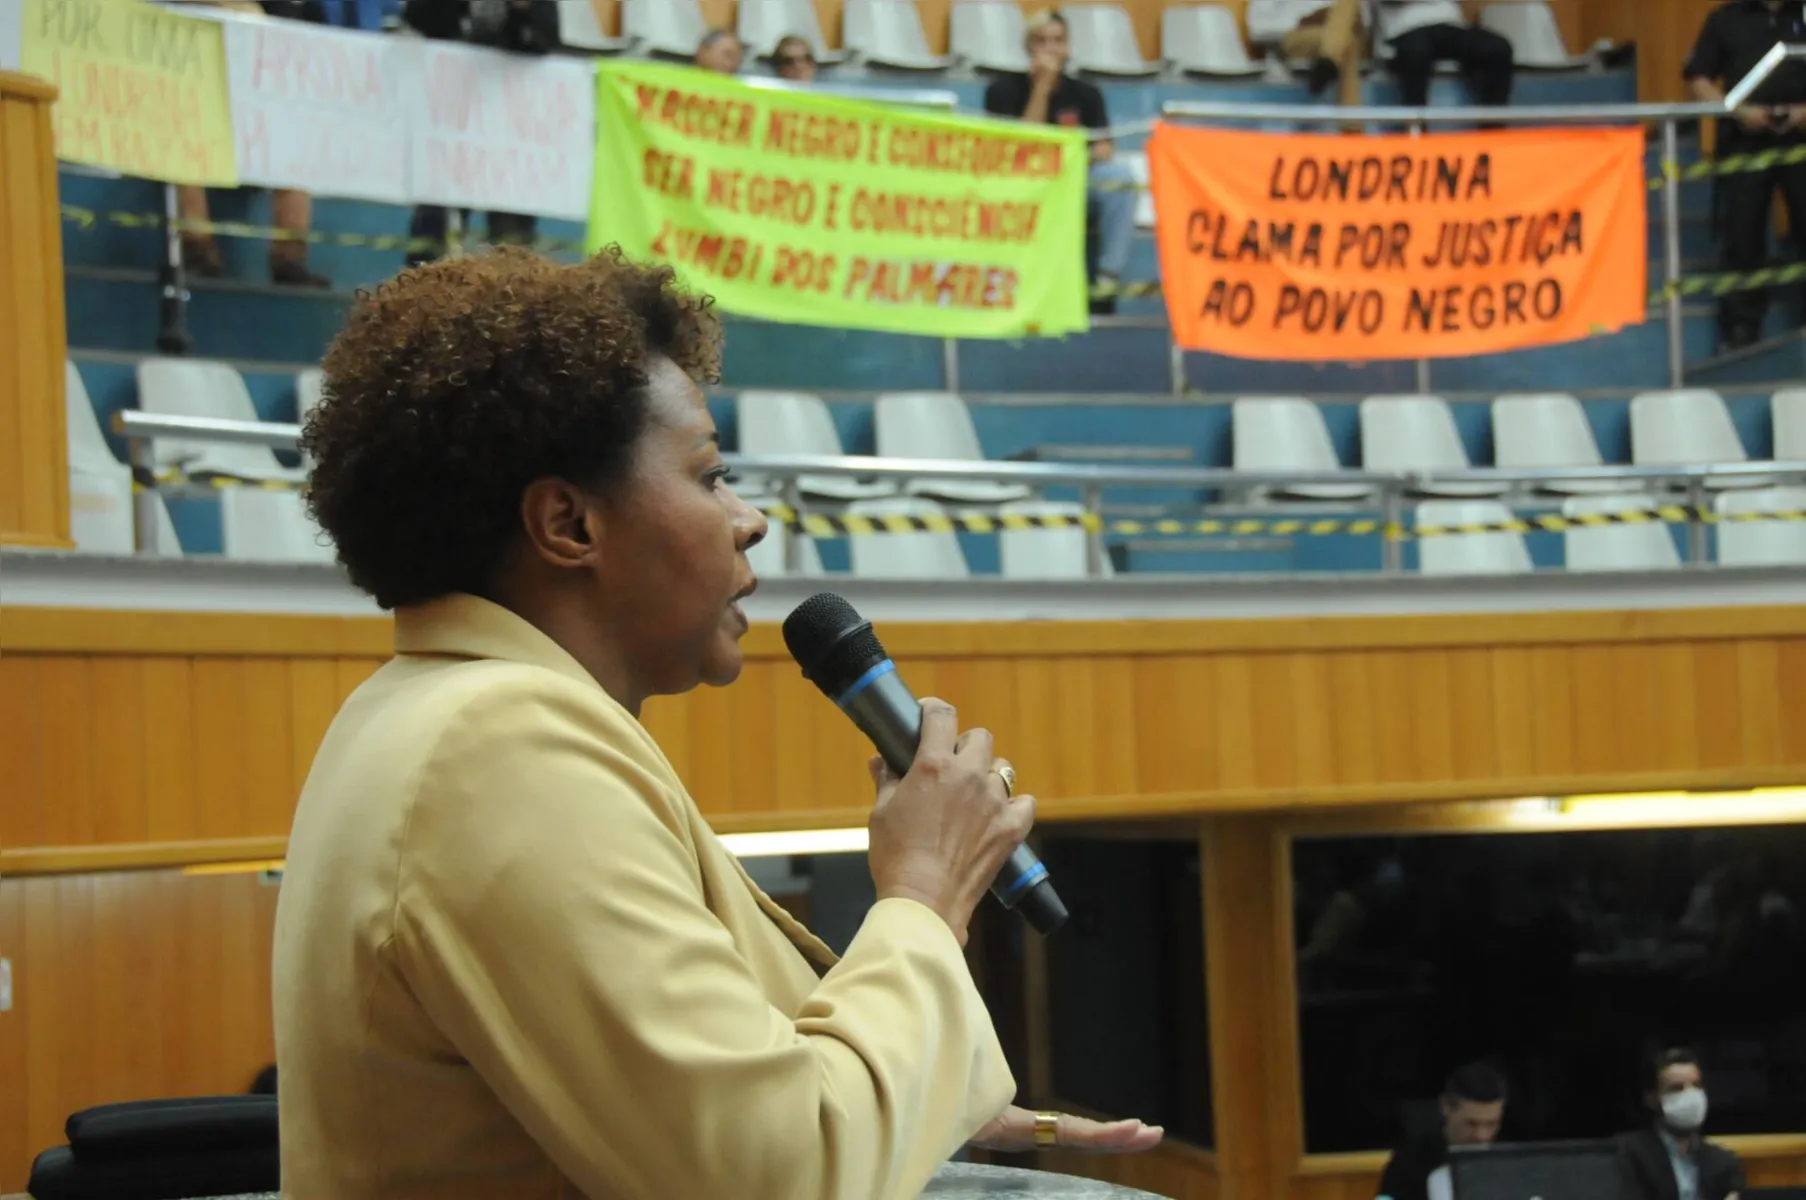 Na foto Maria Lucilda Santos, presidente da Comissão de Igualdade Racial da OAB Londrina